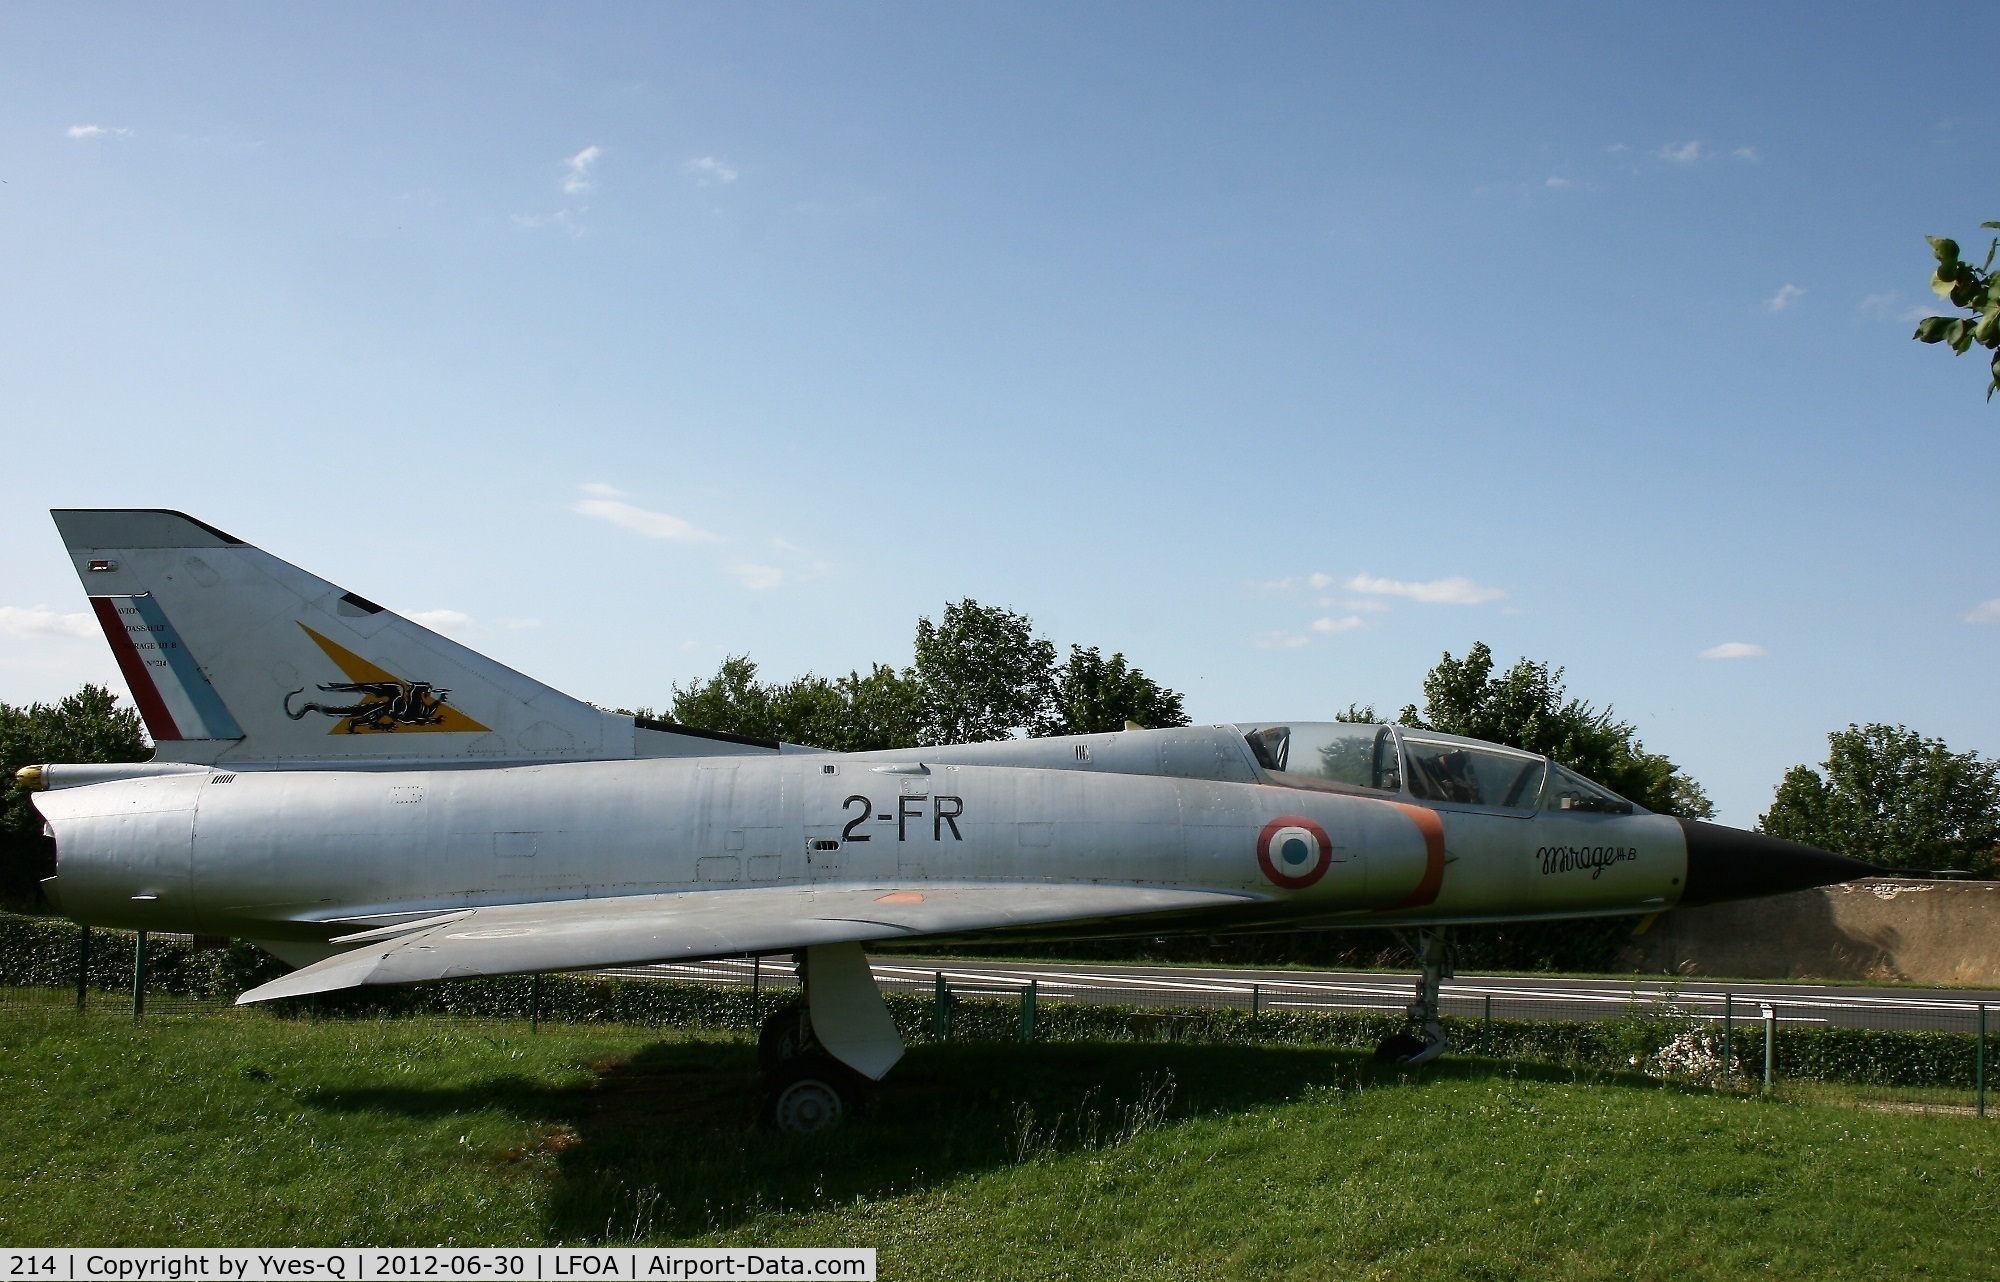 214, Dassault Mirage IIIB C/N 214, Dassault Mirage IIIB, Preserved at Avord